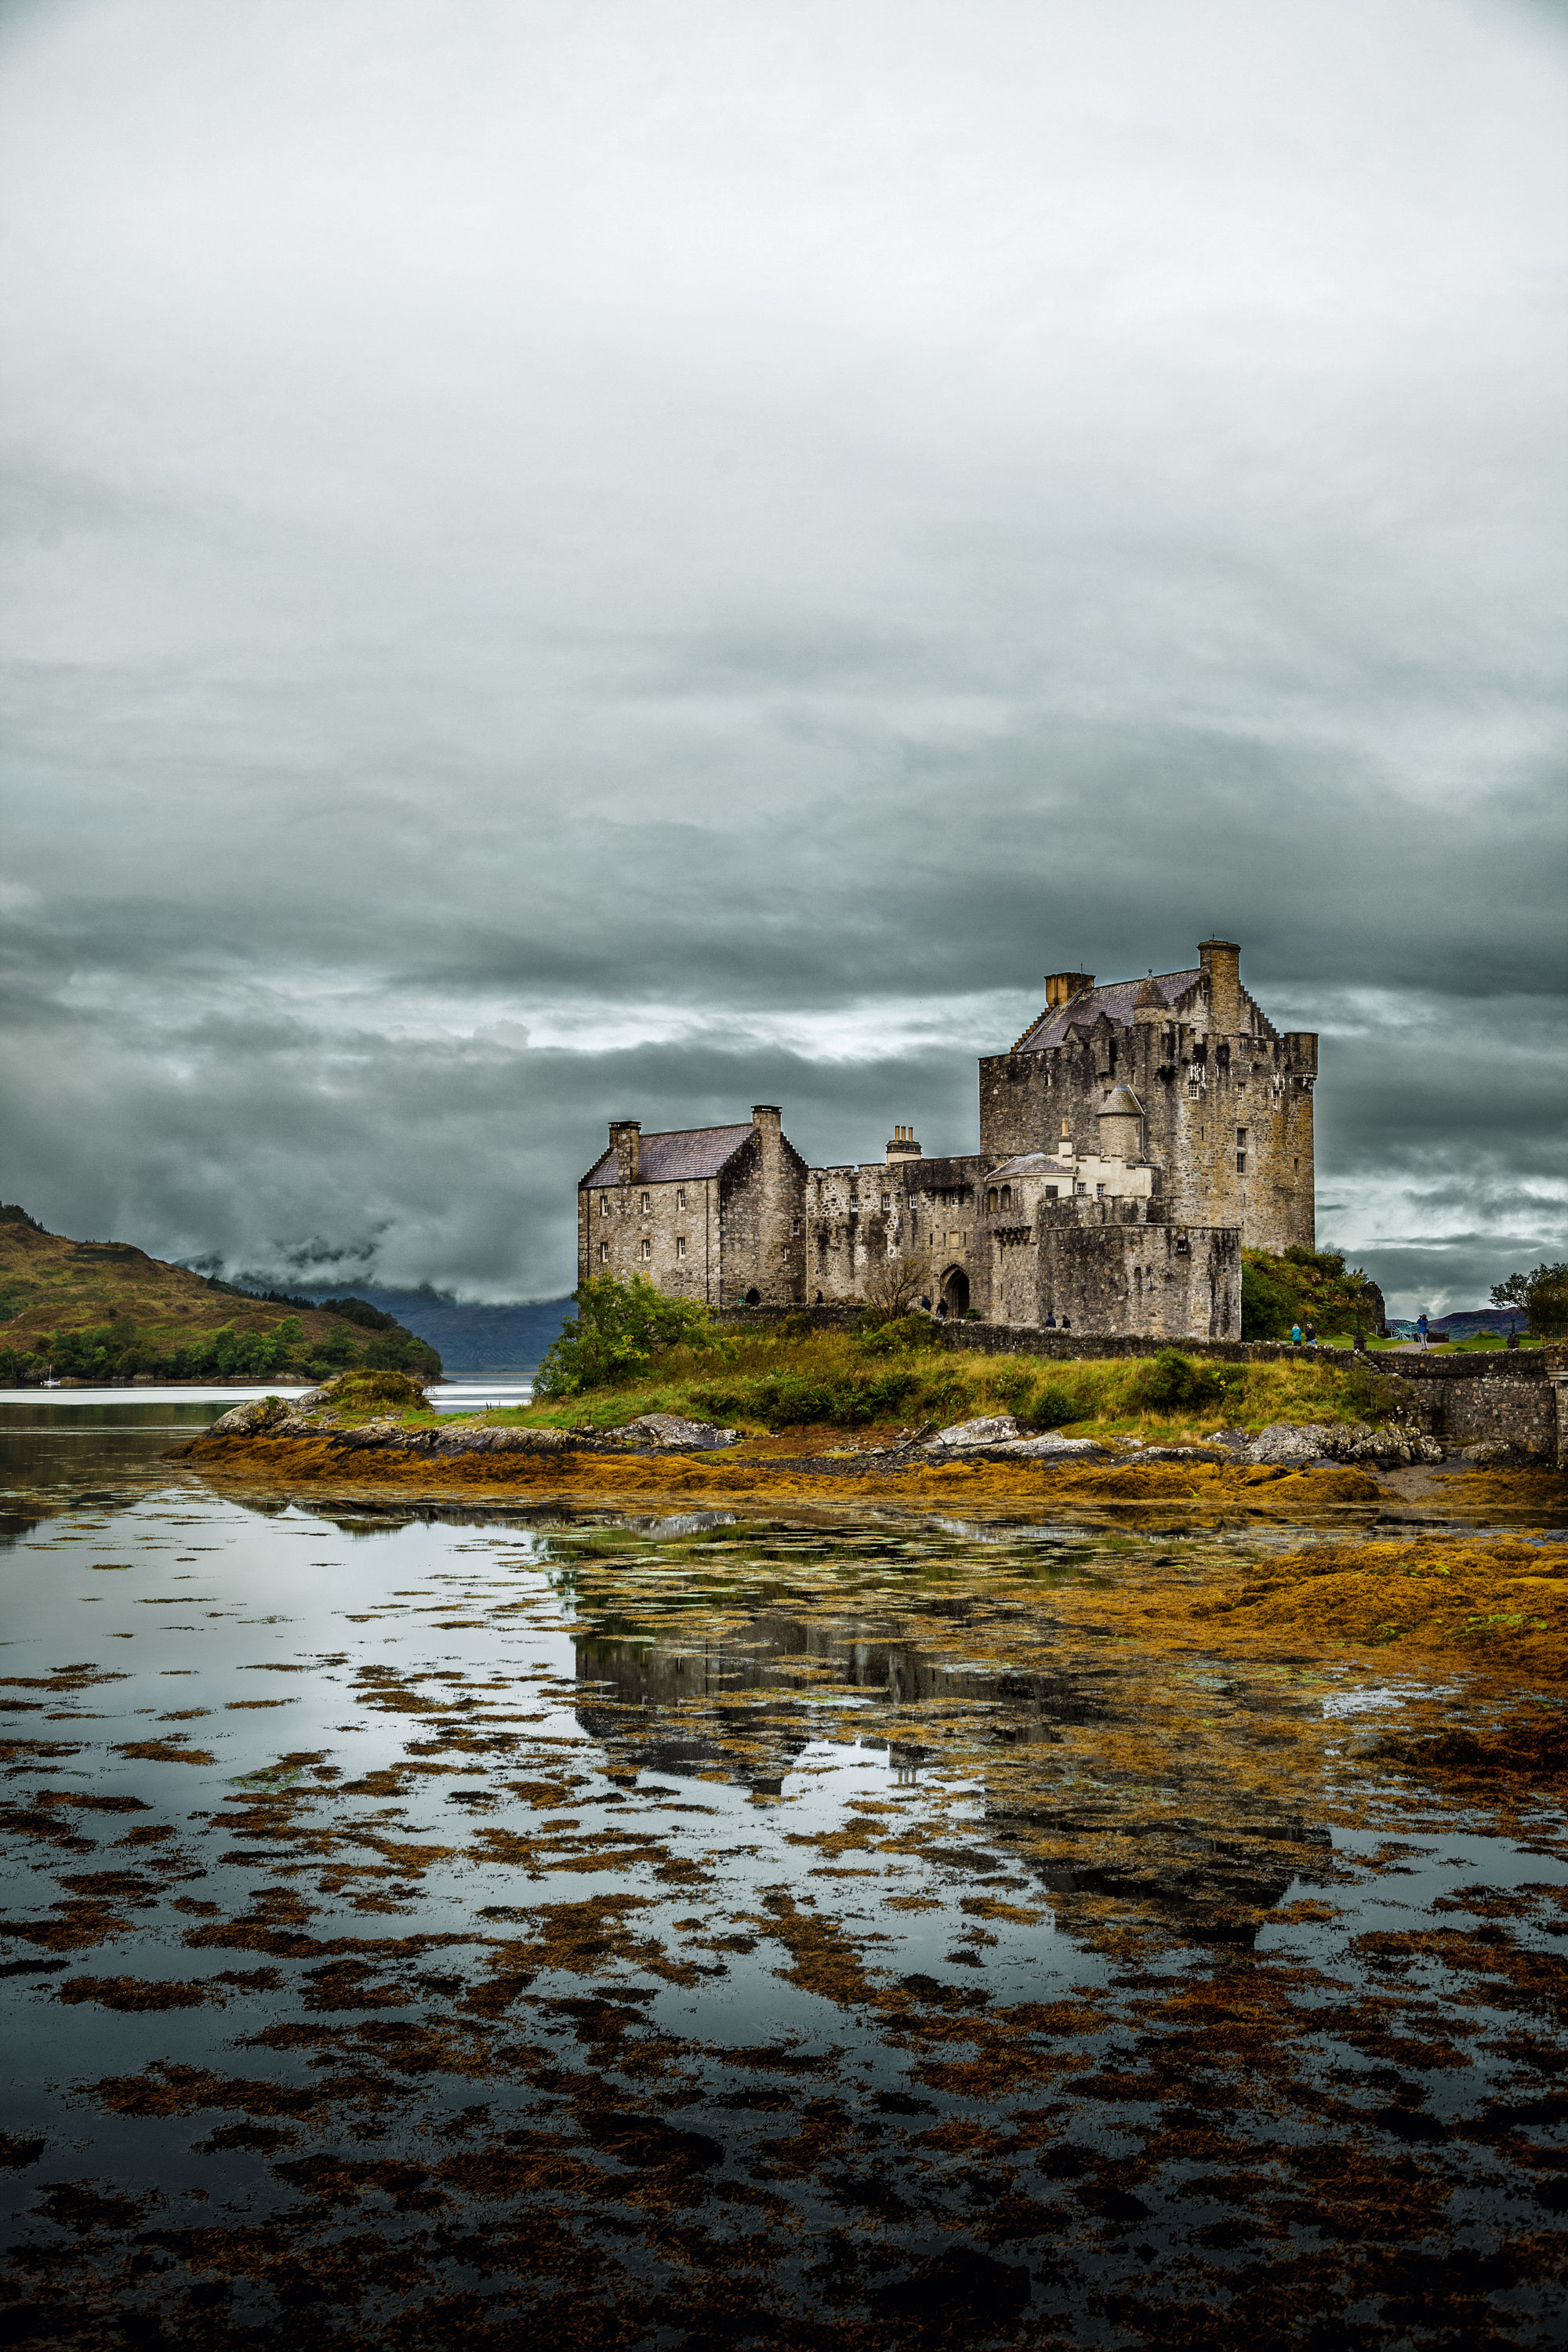 Eilean Donan Castle, set on island in middle of loch